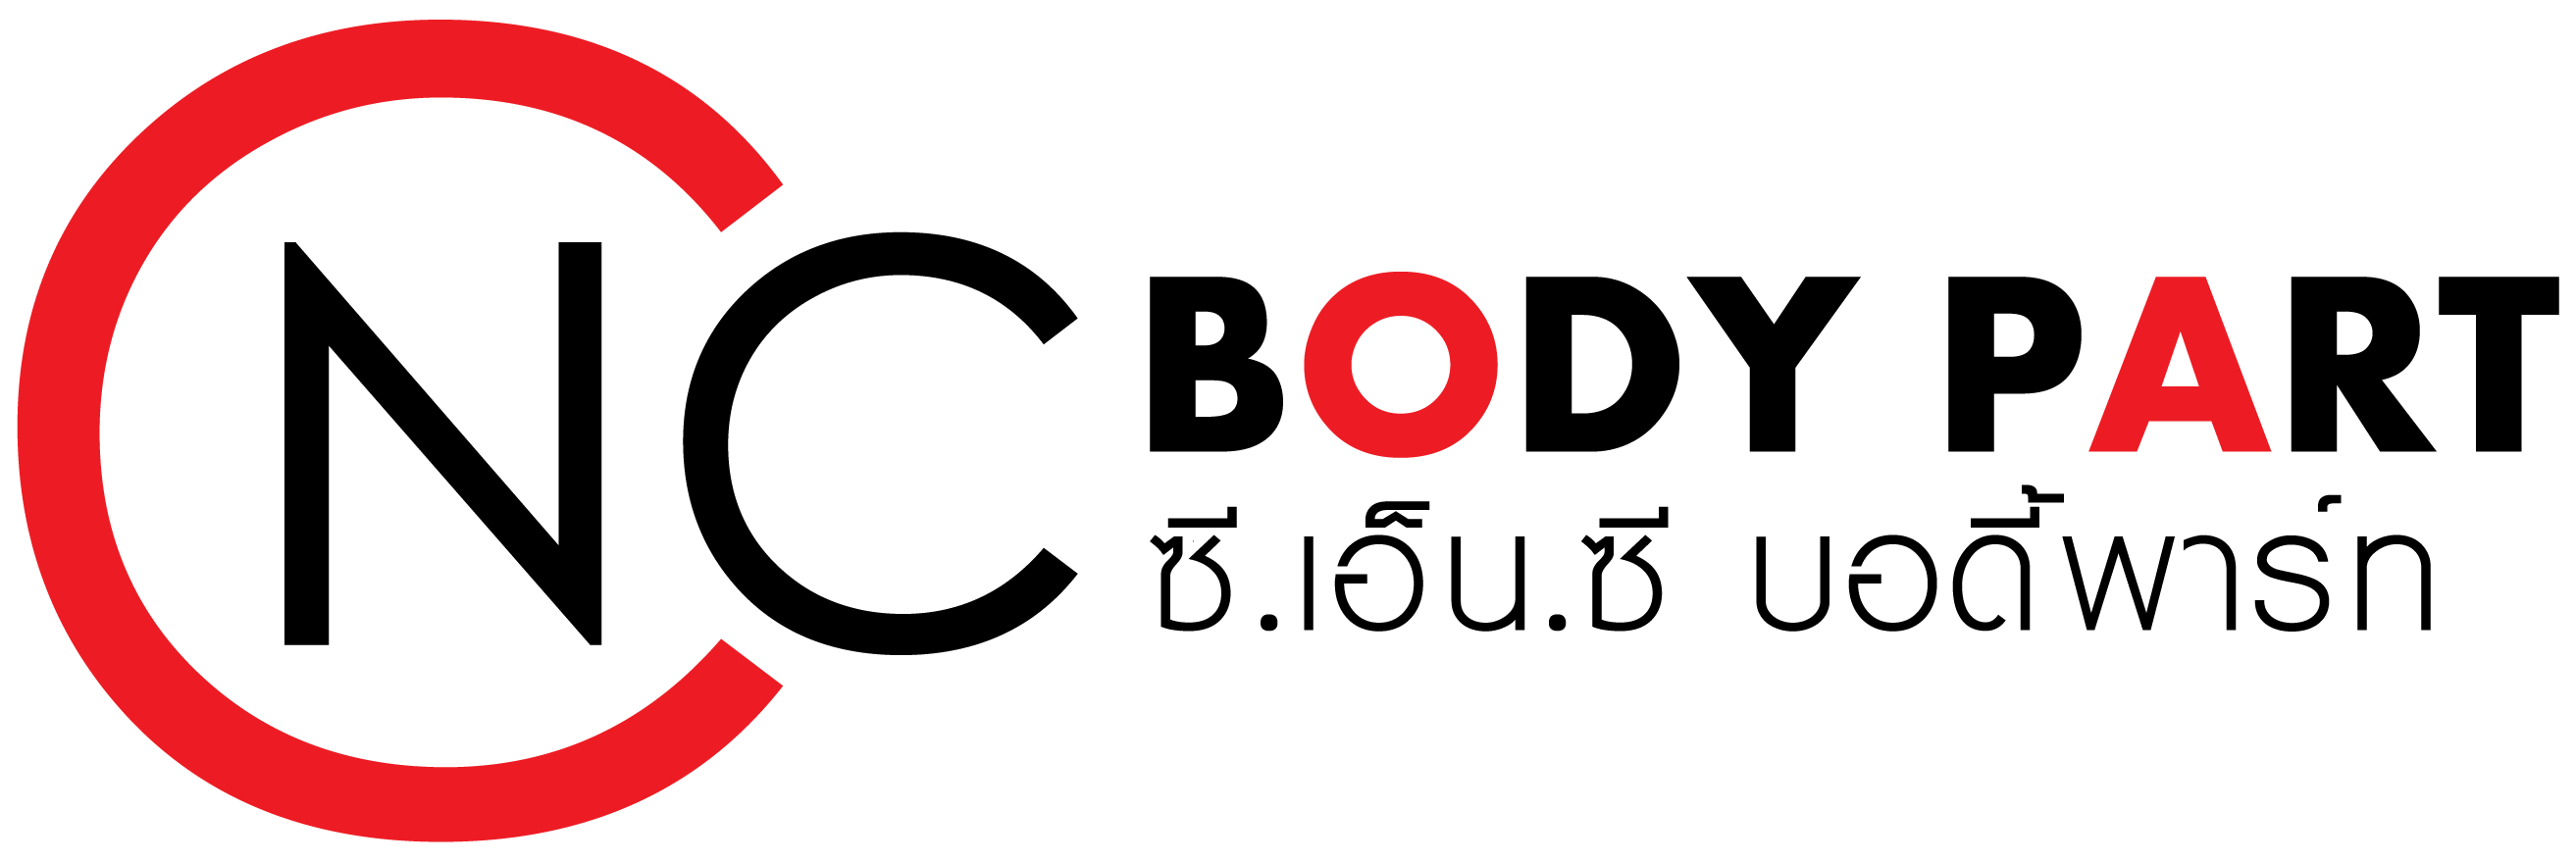 logo-sticky